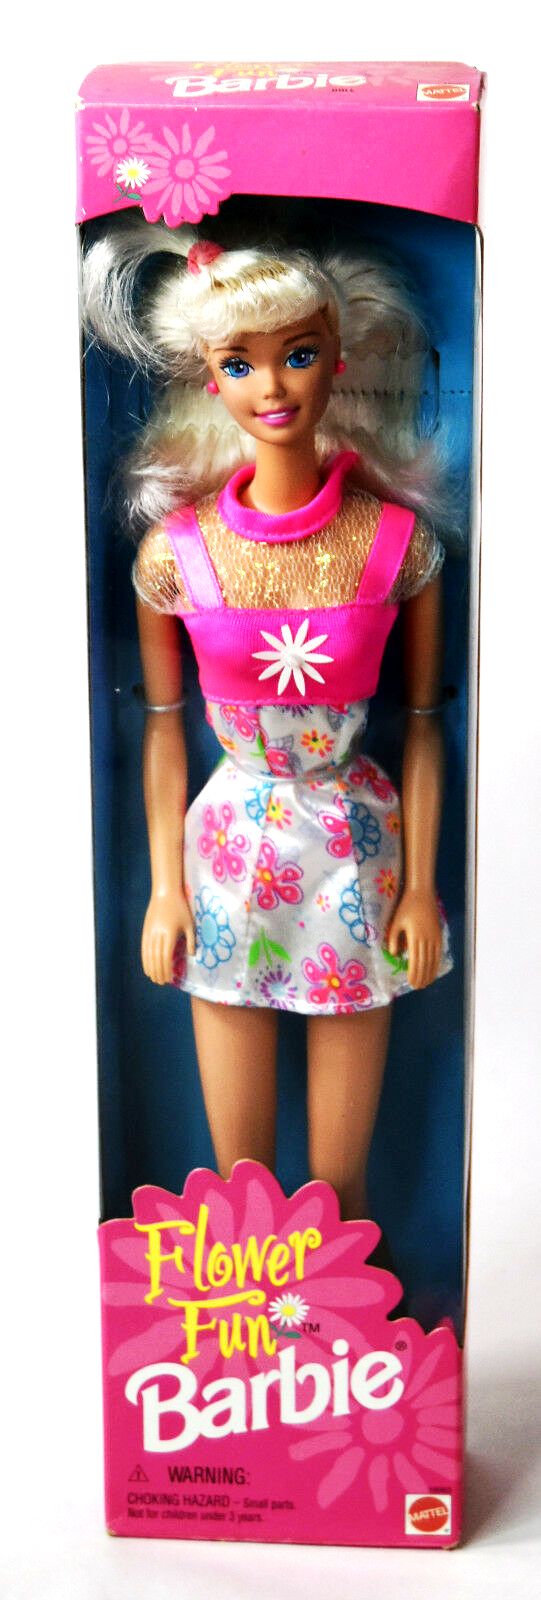 Flower Fun Barbie “Blonde” (Playline Fashion Avenue Vintage 